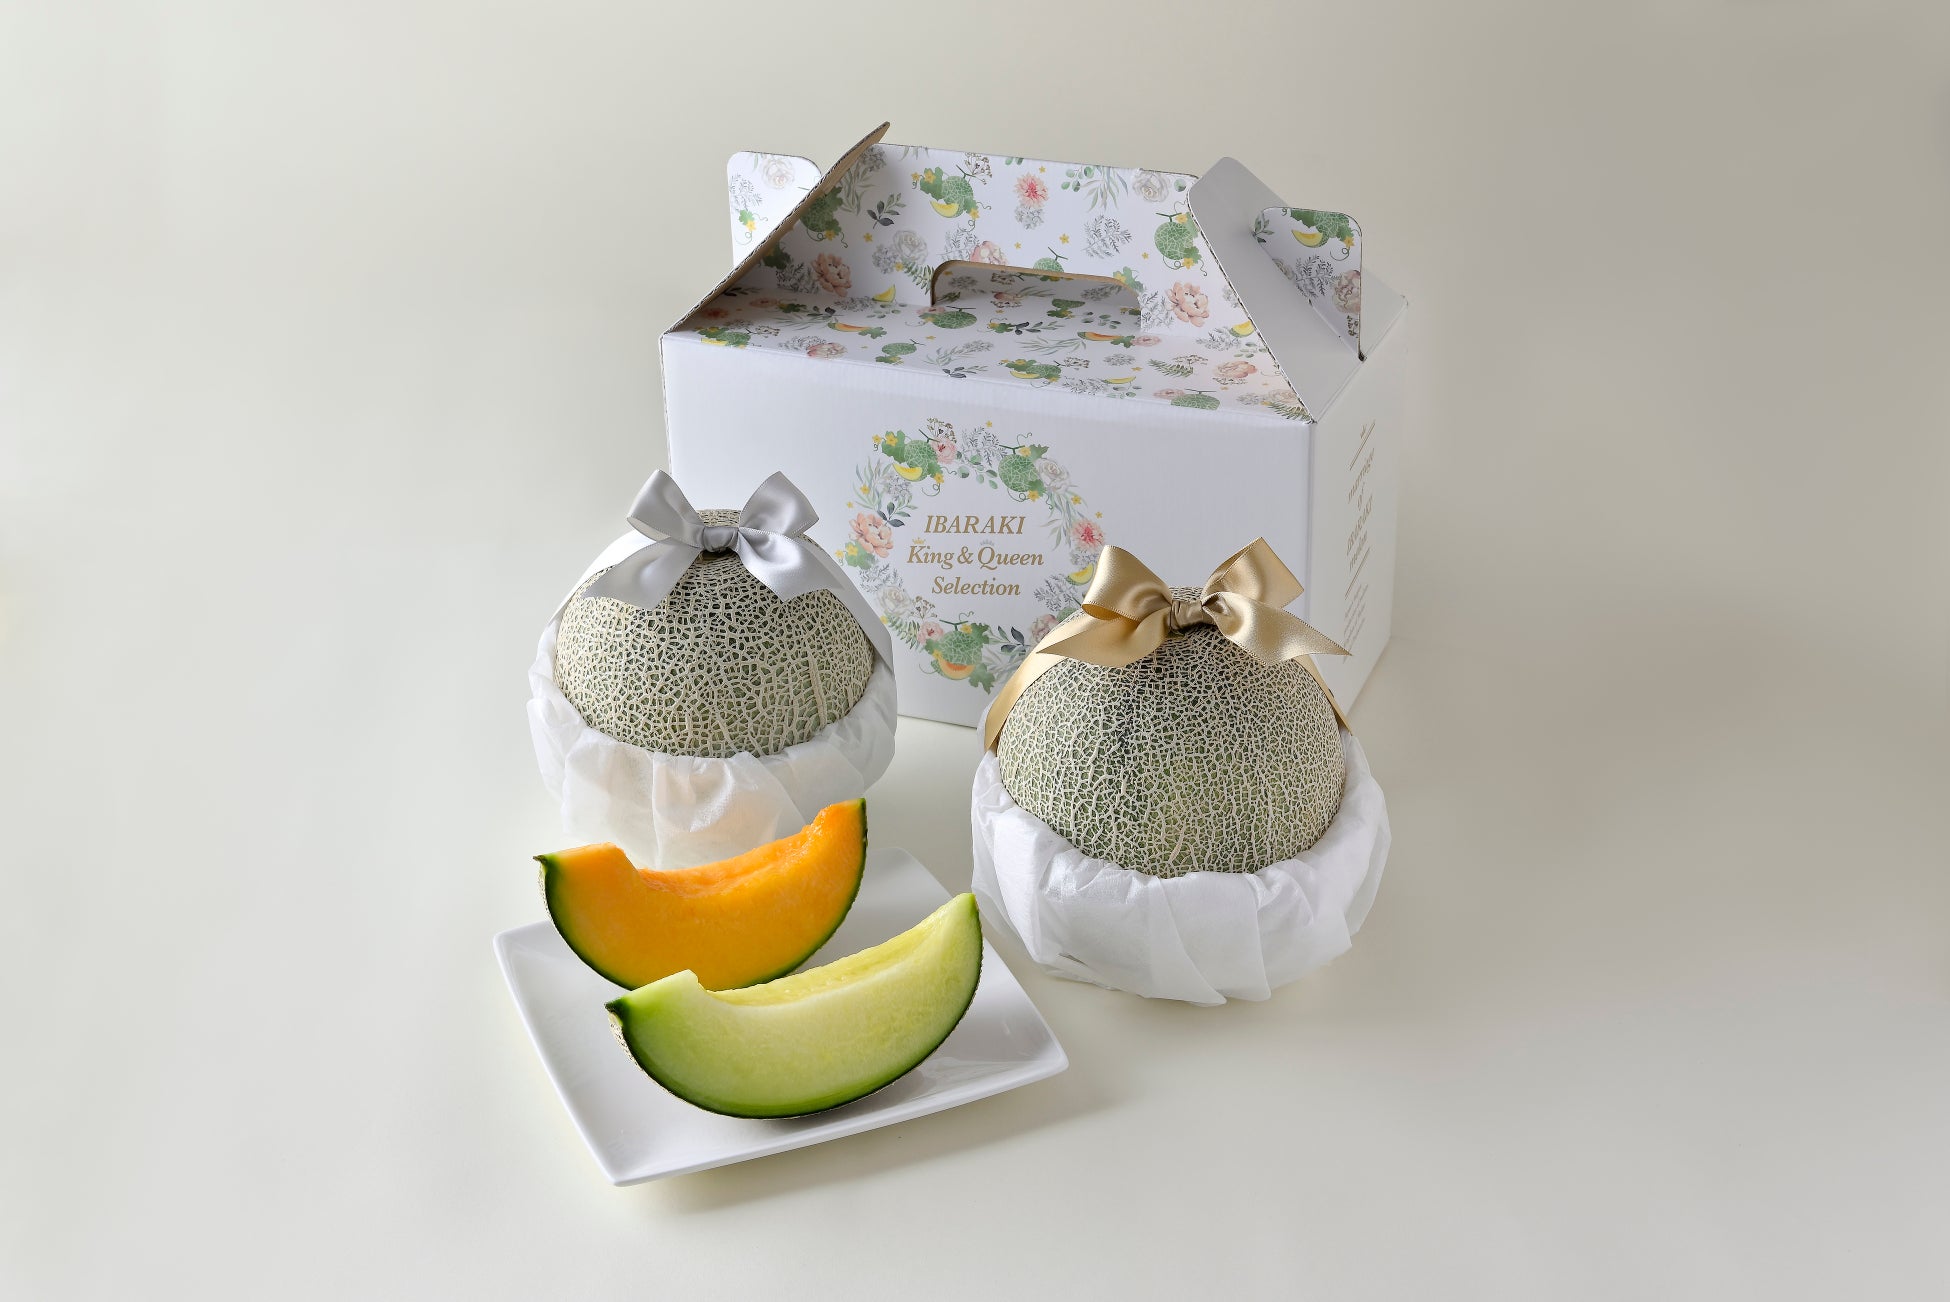 生産量日本一の”メロン王国” 茨城県からのギフト「IBARAKI melon King & Queen Selection」が販売開始。